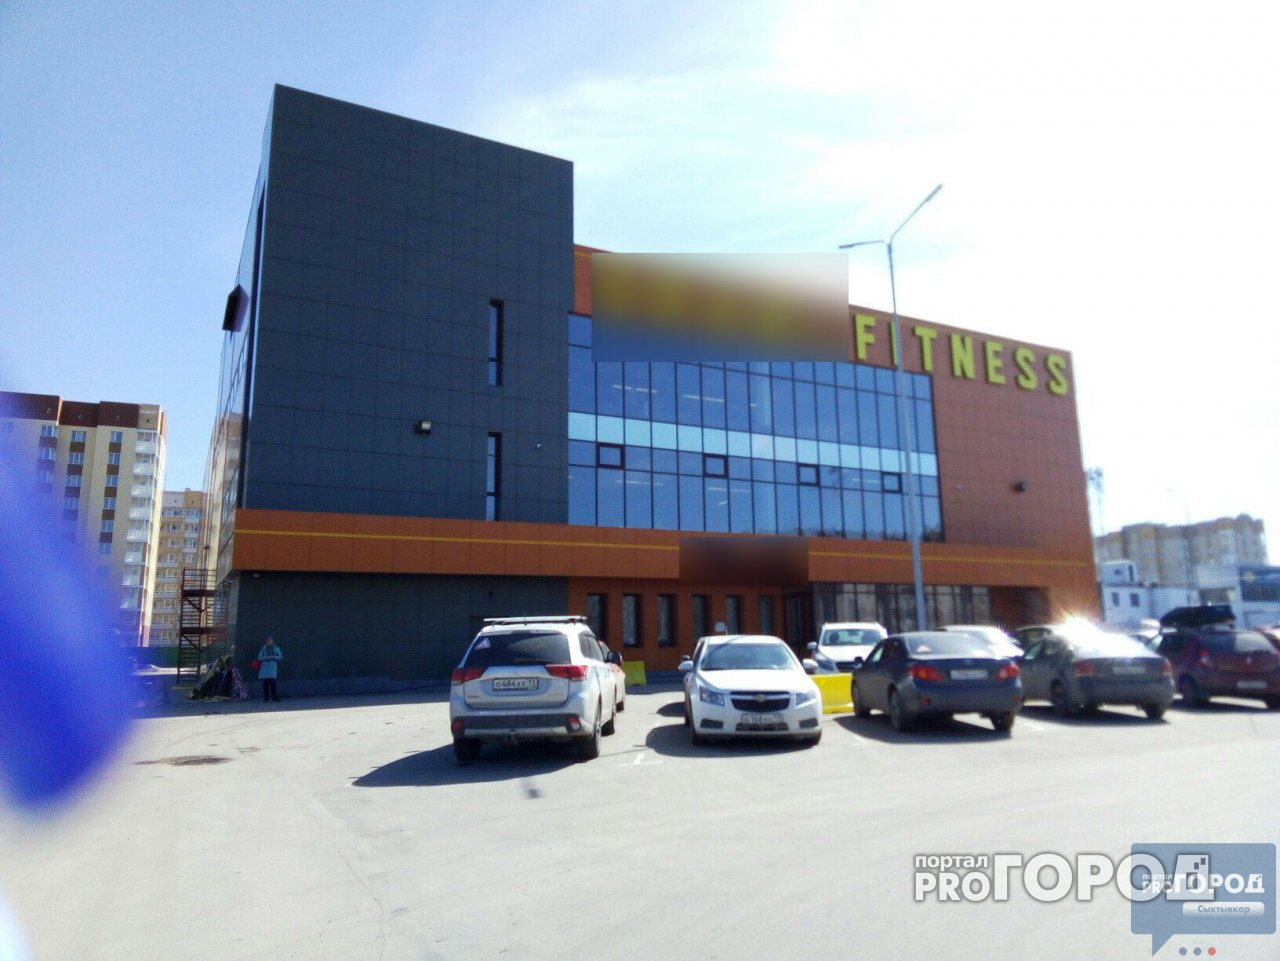 В Сыктывкаре закрылся популярный фитнес-клуб Gold's Gym (фото)